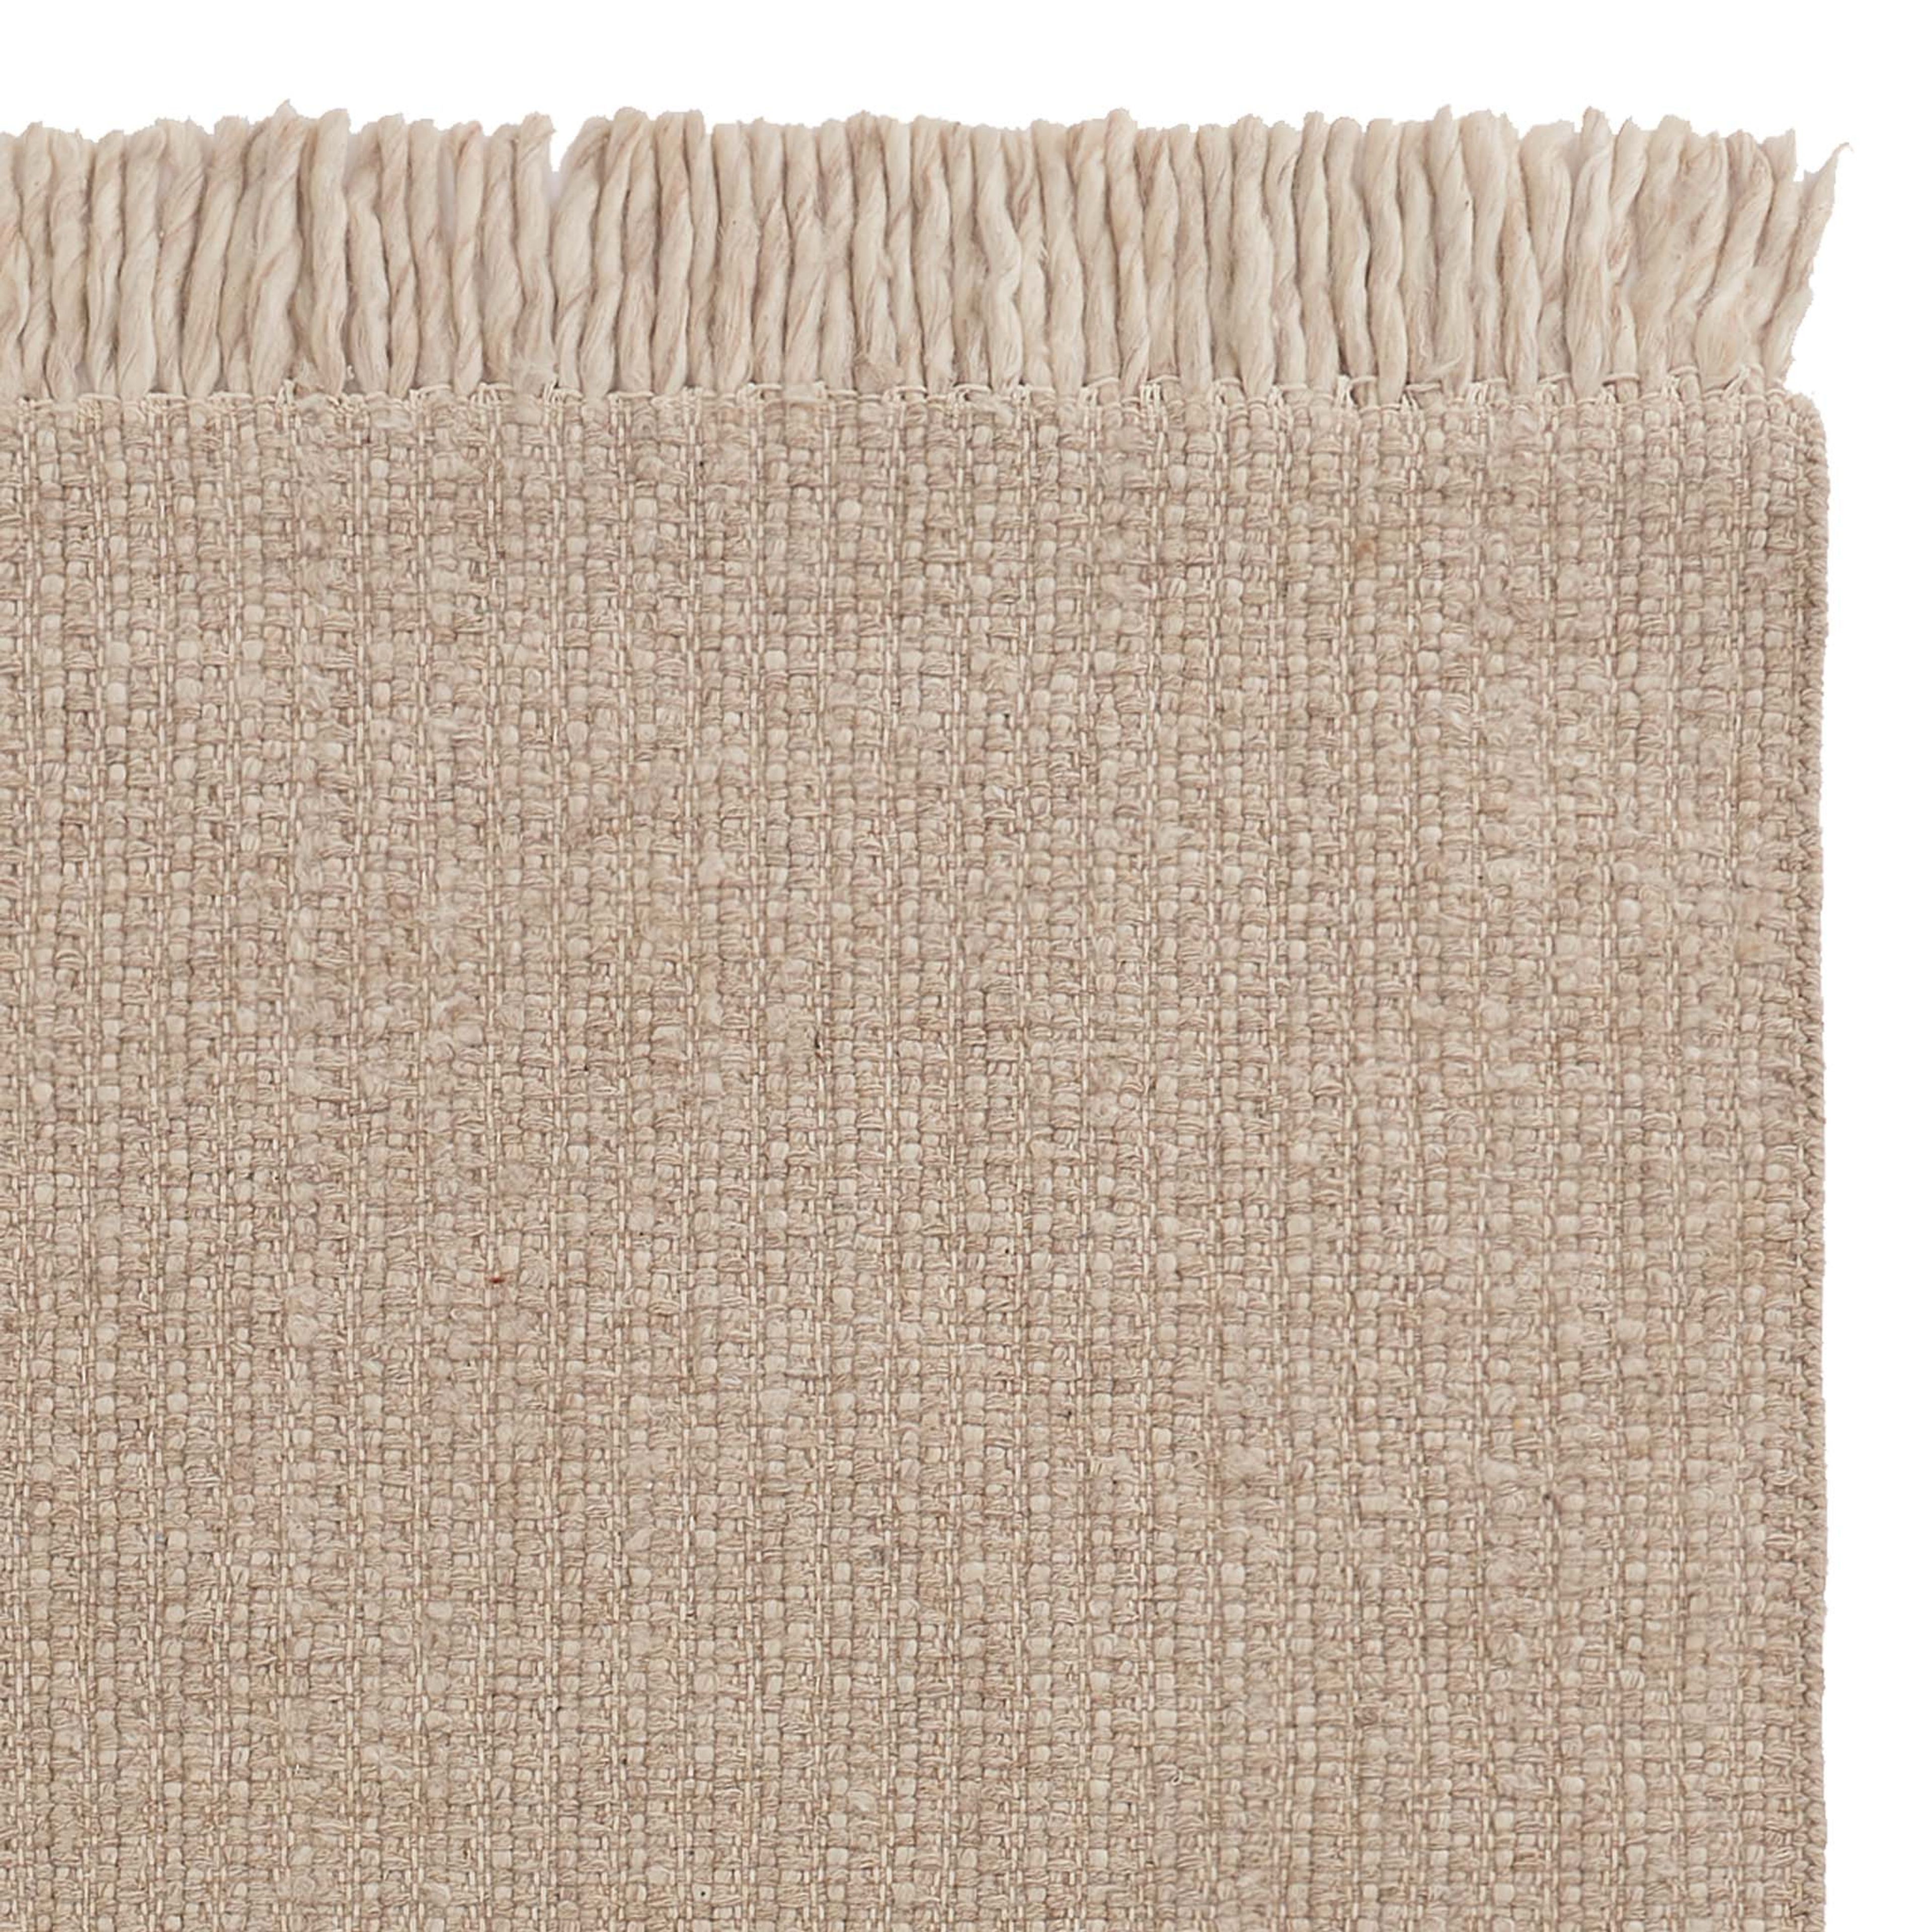 Thavar wool rug [Natural/Off-white]